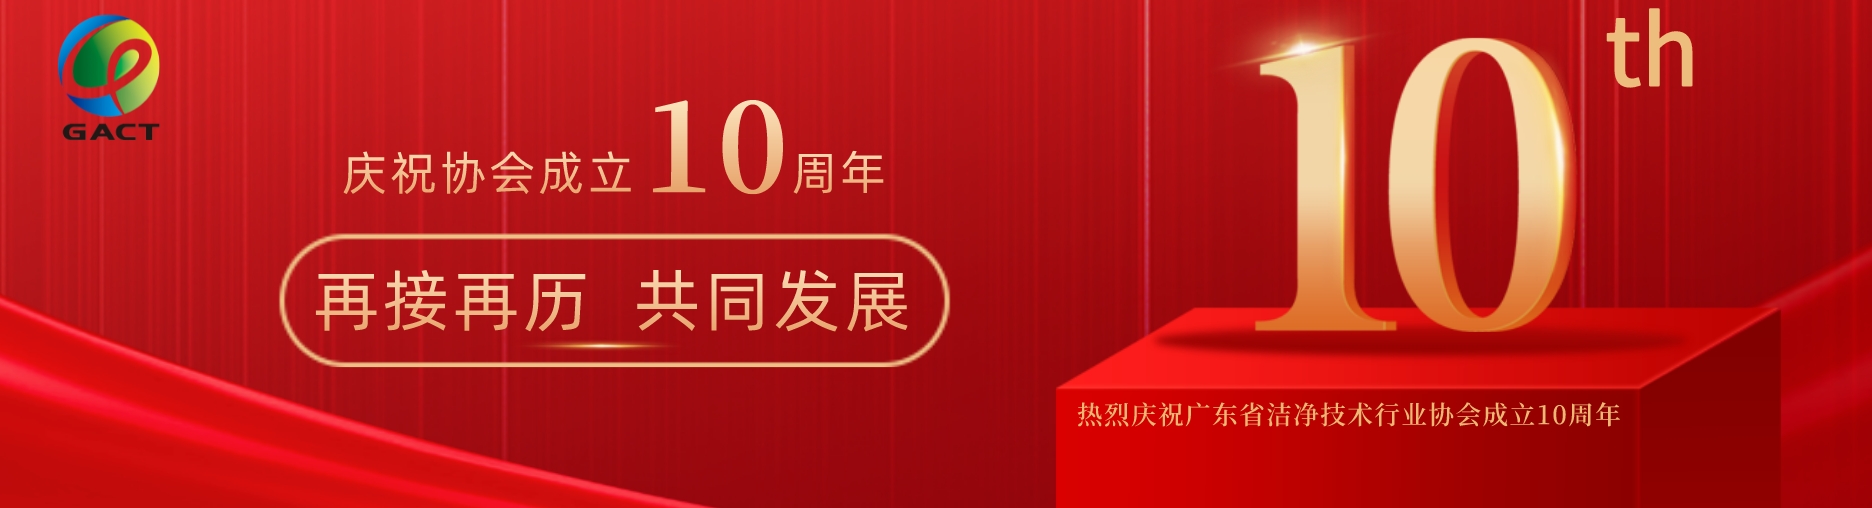 热烈庆祝广东省洁净技术行业协会成立10周年